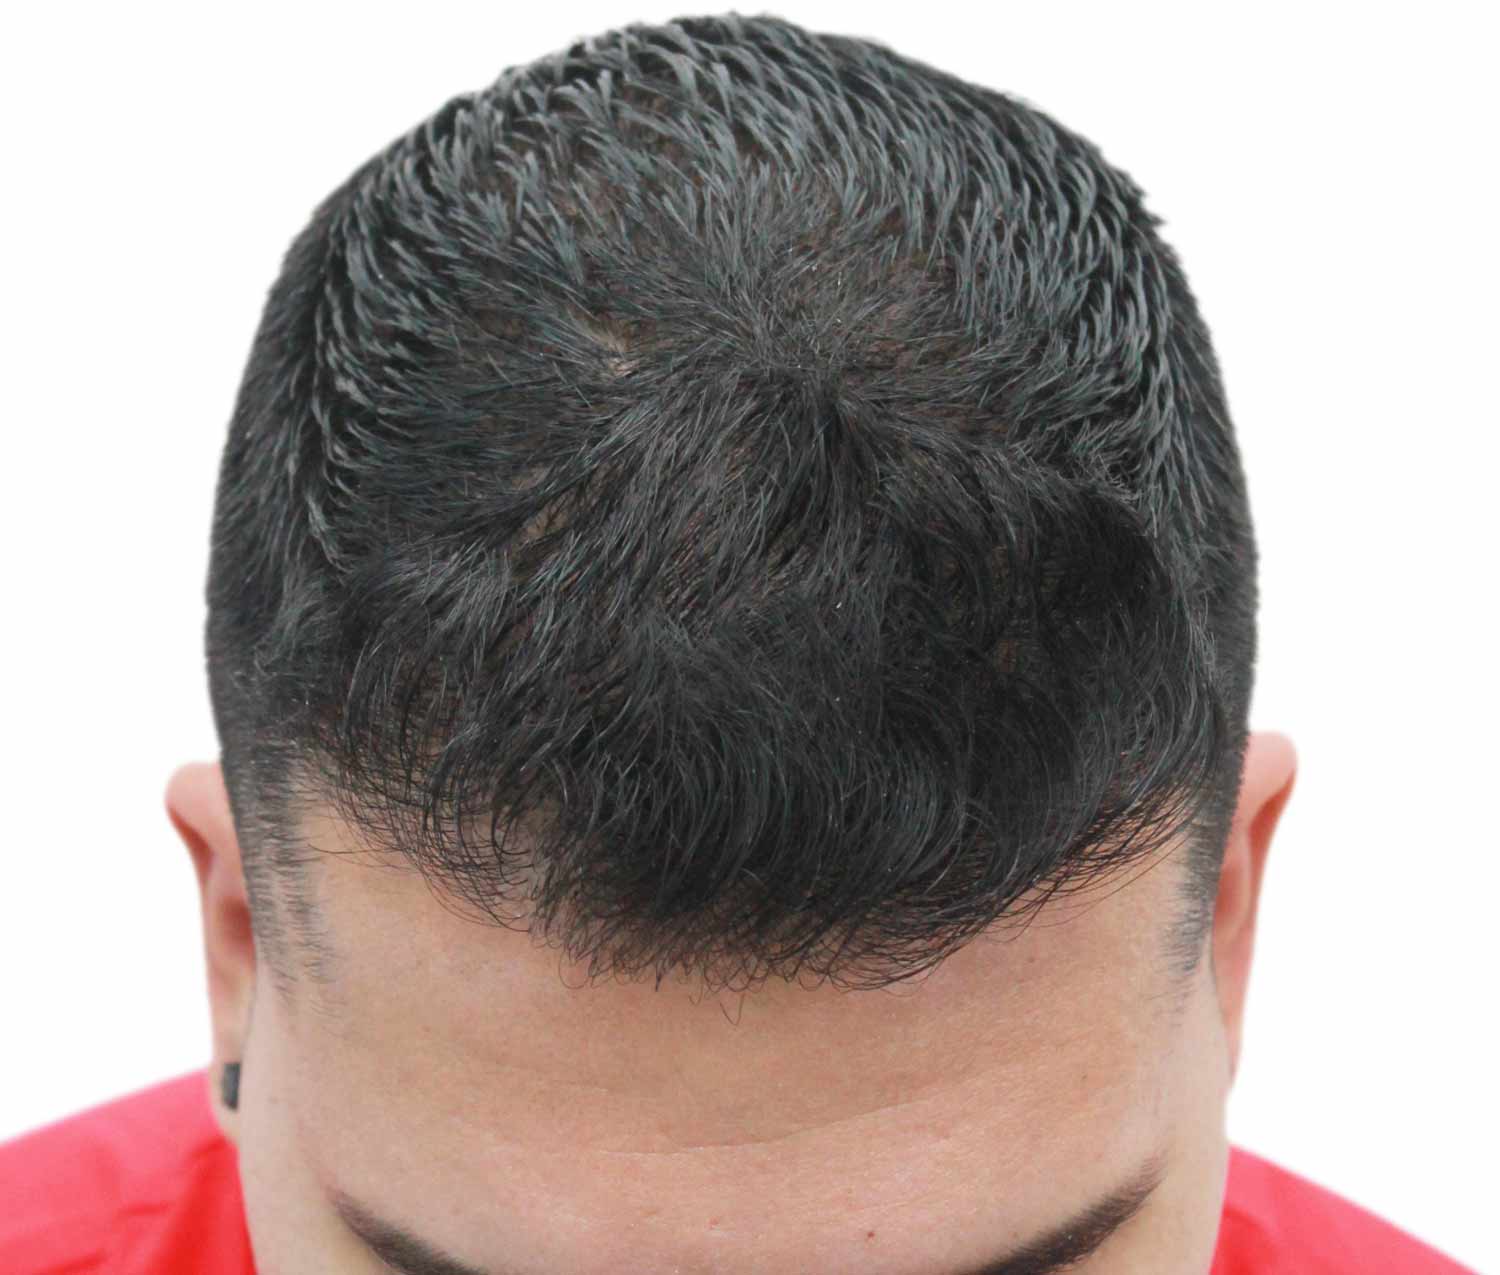 a close up of a man 's head with a red shirt on